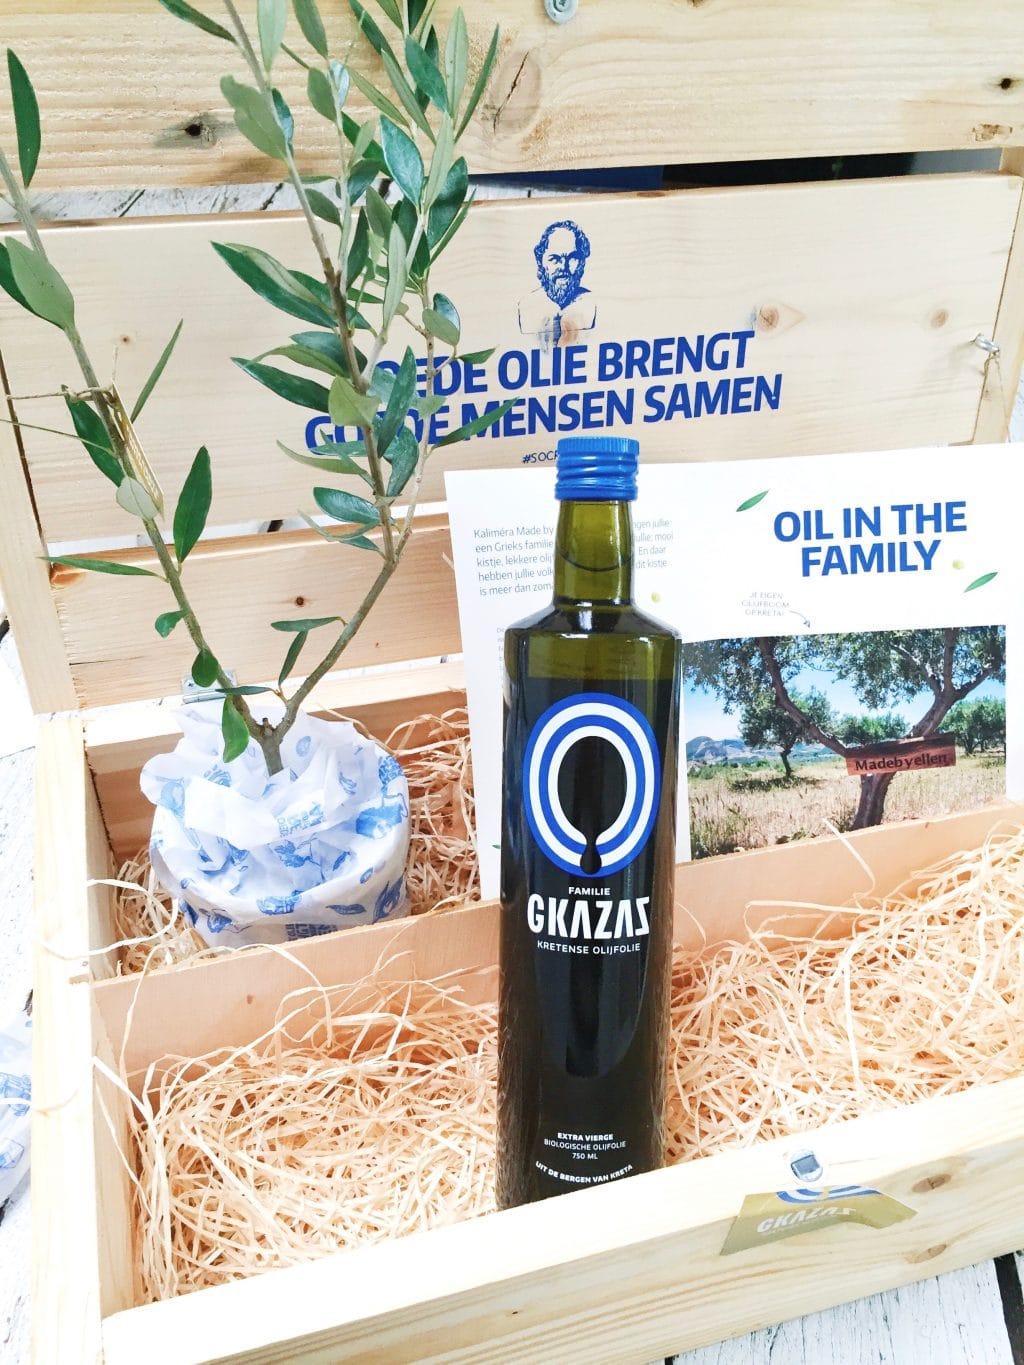 Win! 1 jaar lang GKAZAS olijfolie van je eigen boom made by ellen